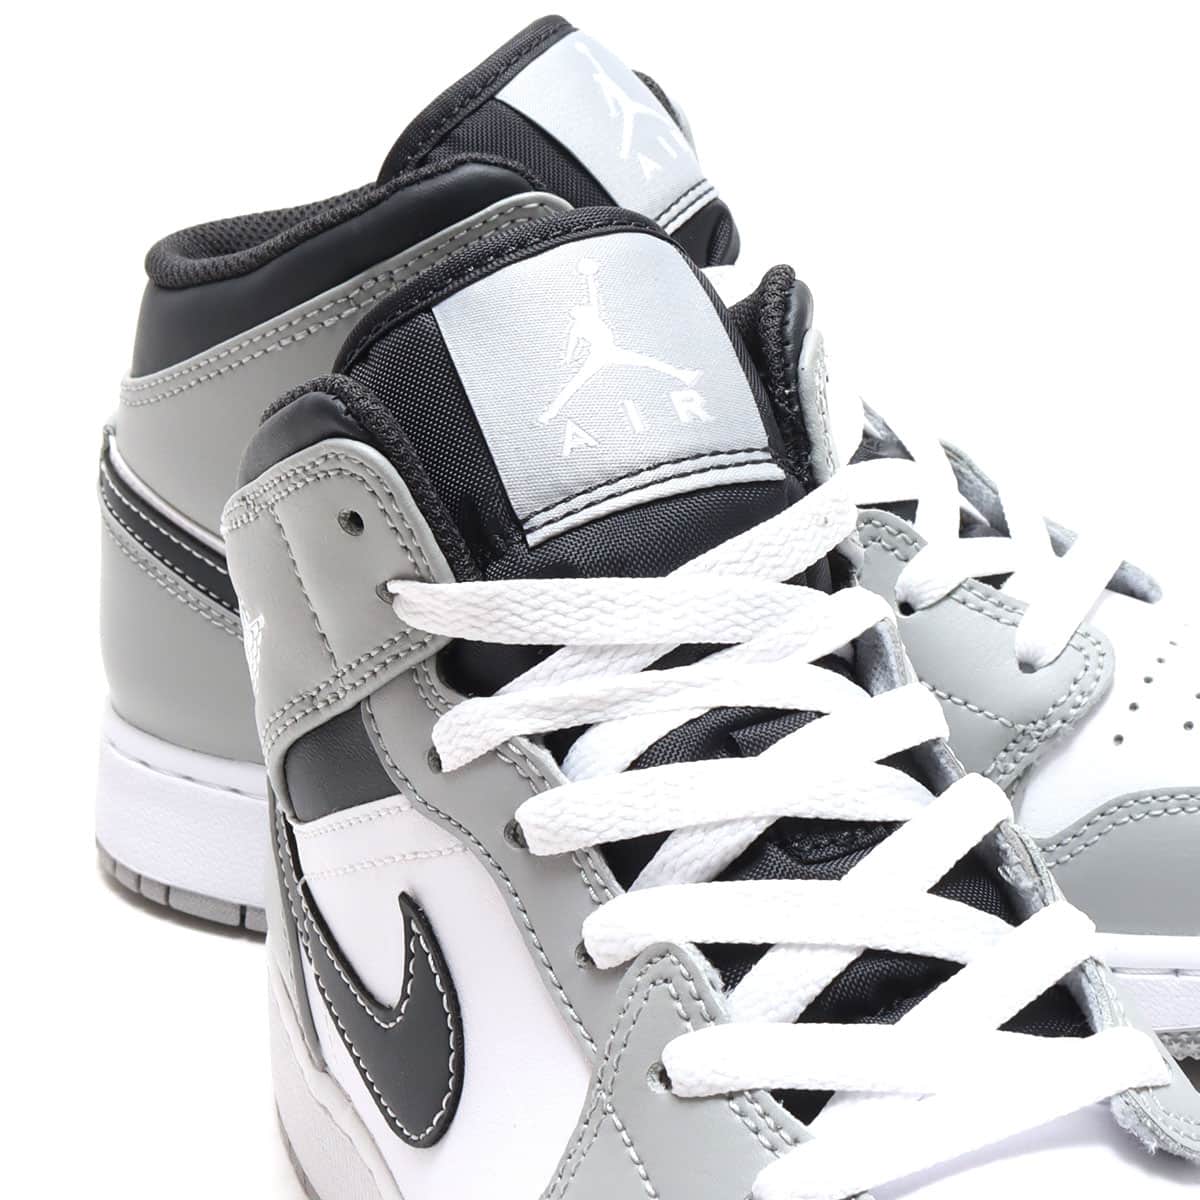 Nike GS Air Jordan 1 Mid "Vintage Grey"